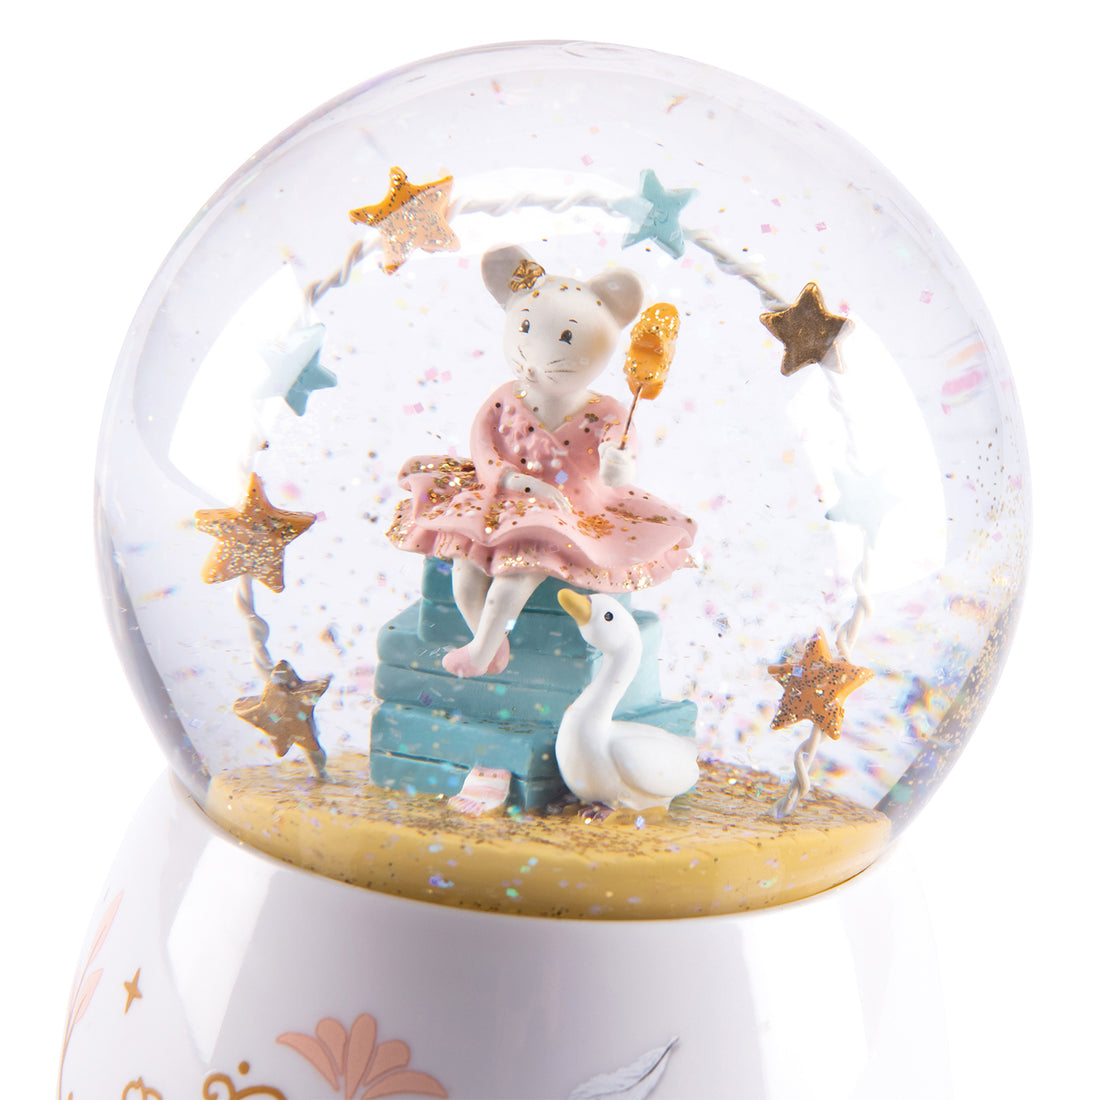 moulin-roty-la-petite-ecole-de-danse-musical-turning-snow-globe-in-gift-box-moul-667175